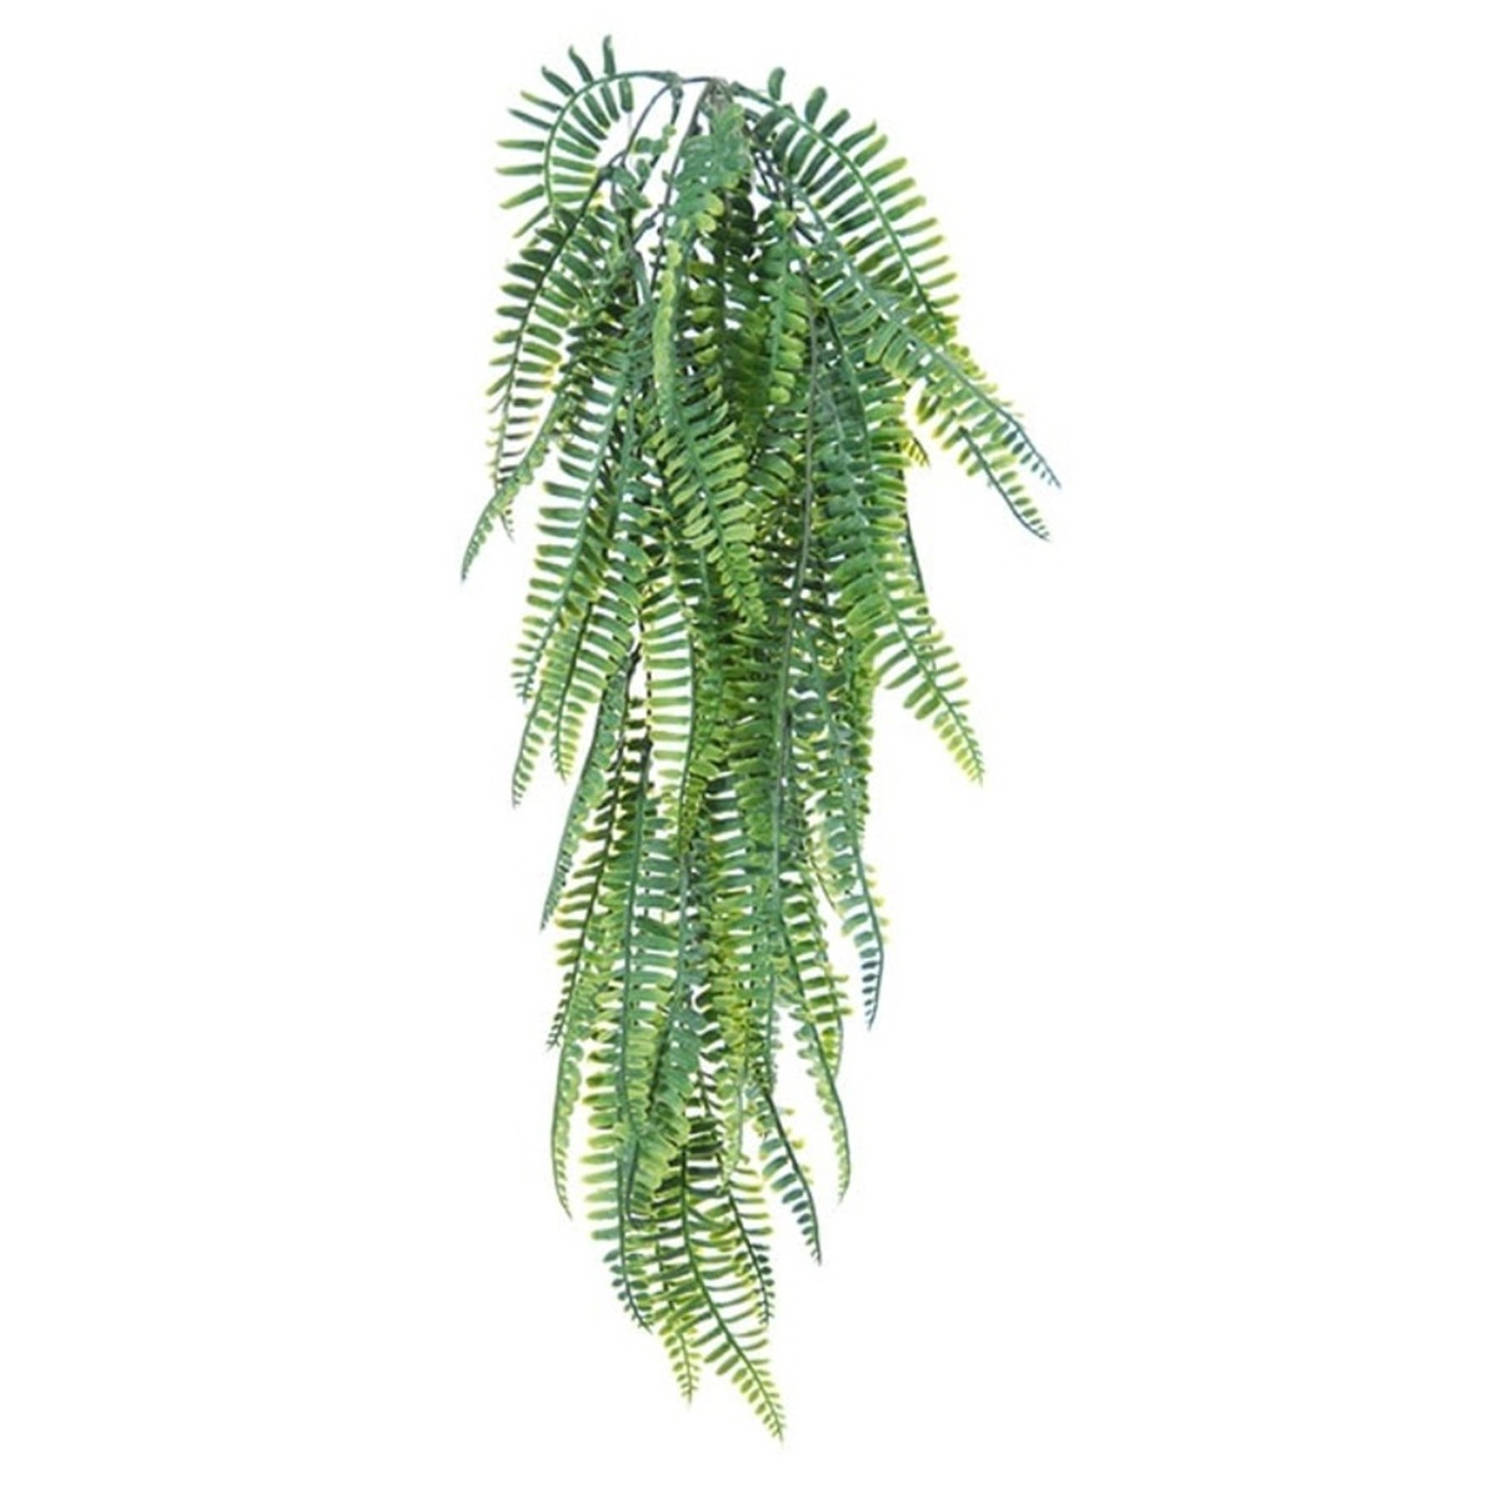 Louis Maes kunstplanten - Varen - groen - hangende takken bos van 55 cm